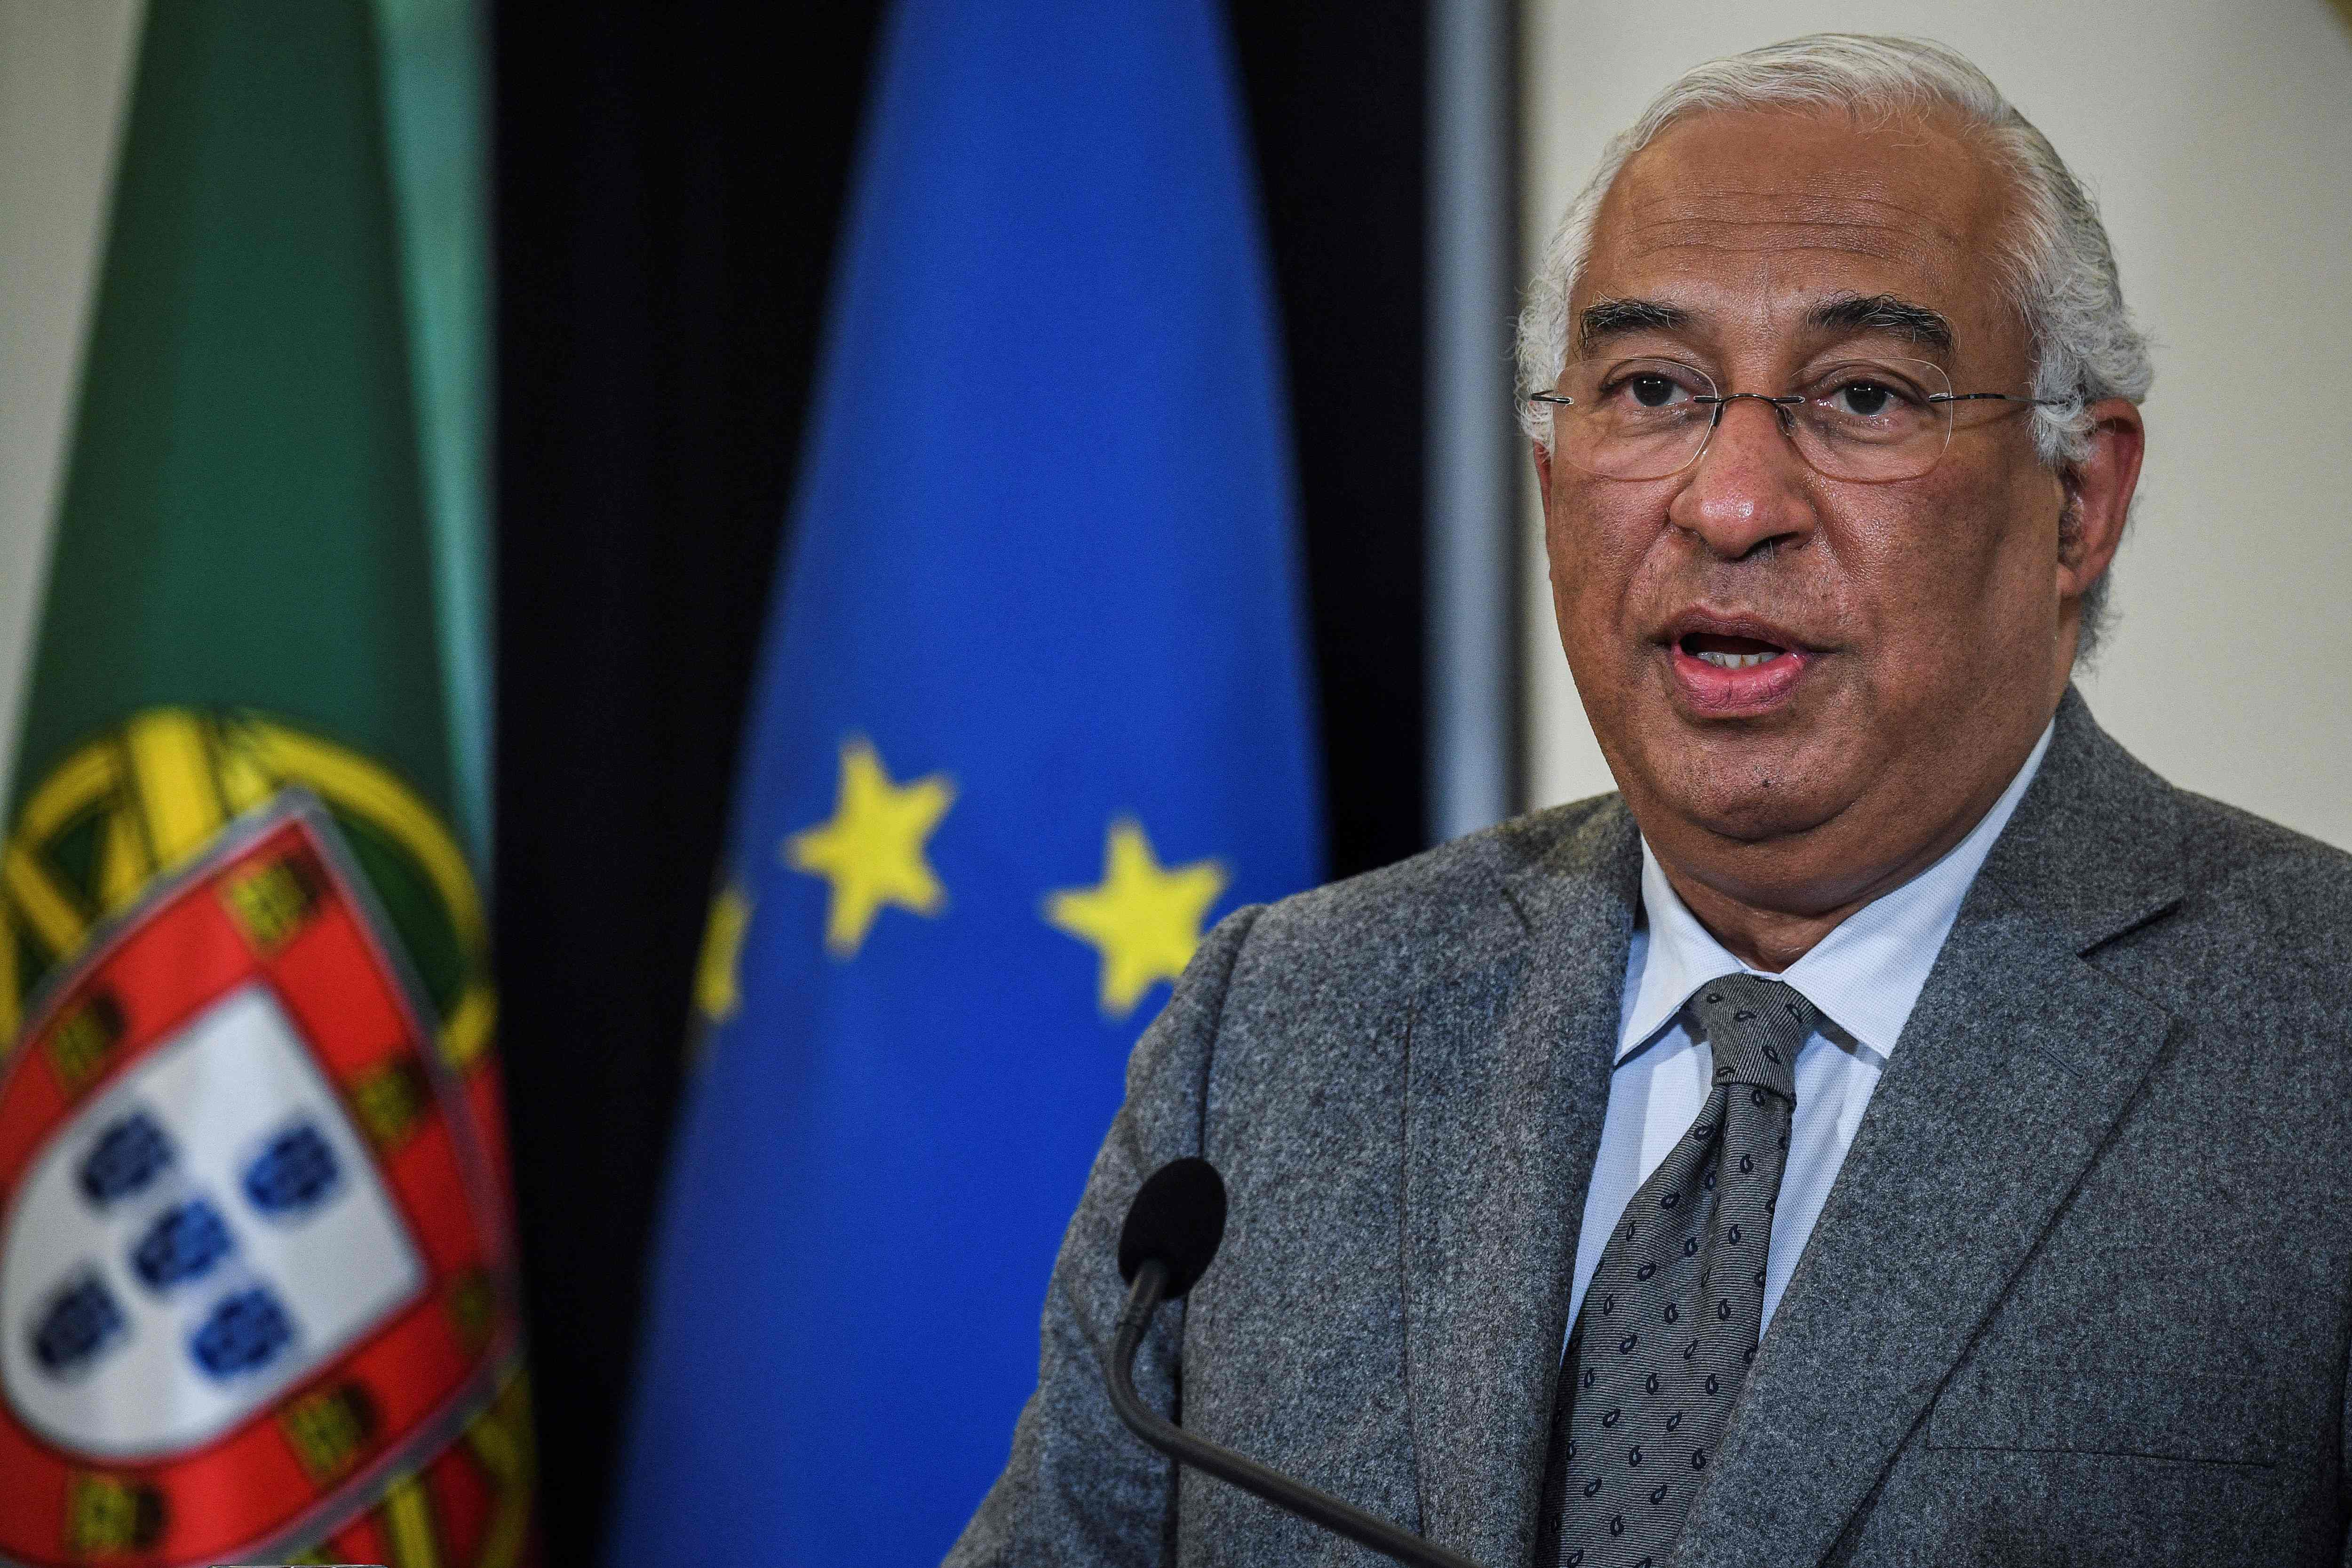 António Costa, respaldado como presidente del Consejo Europeo, en imagen de archivo durante una sesión parlamentaria en Lisboa. (Foto: PATRICIA DE MELO MOREIRA / AFP)